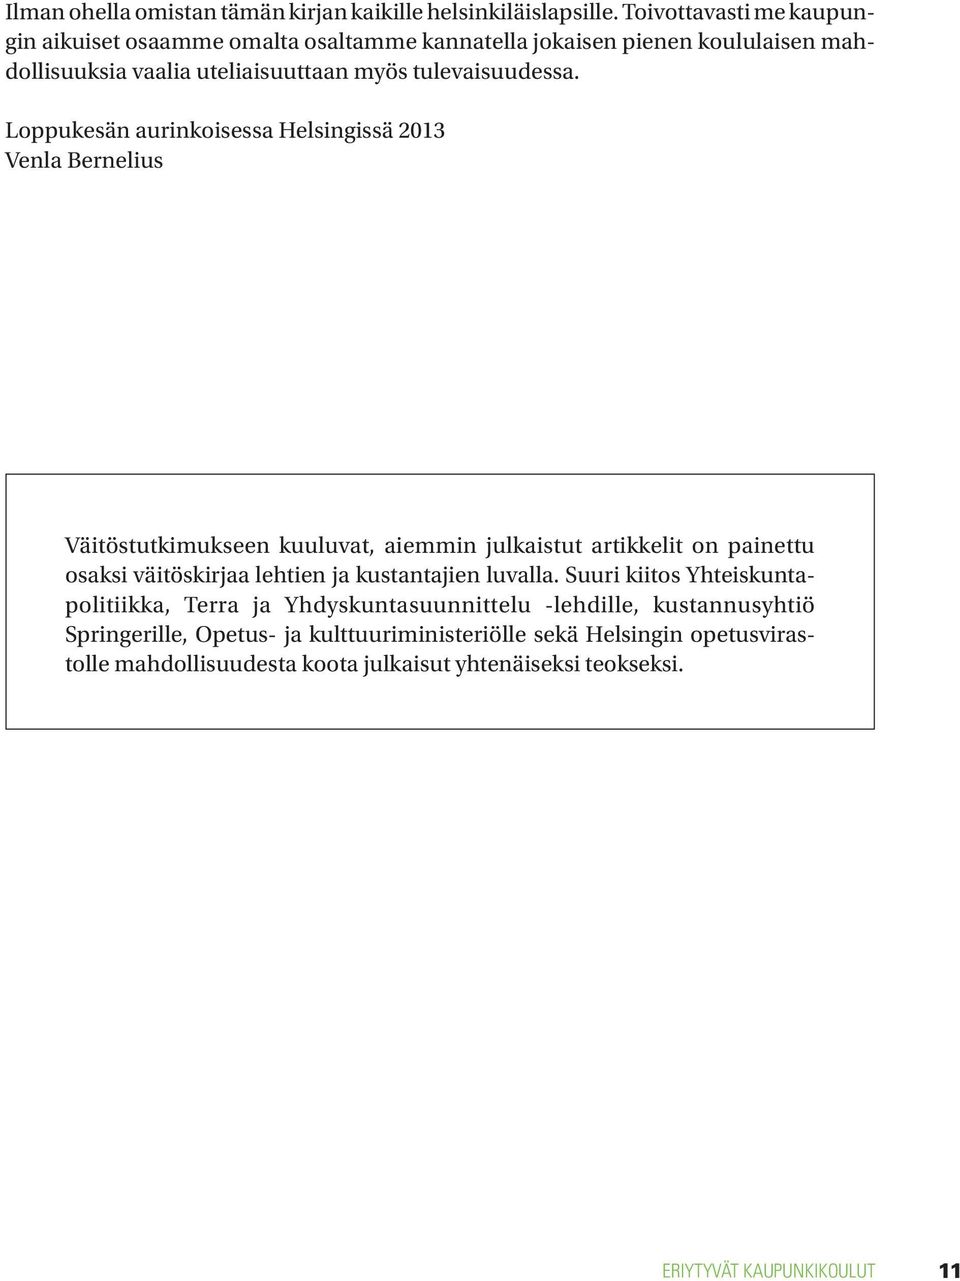 Loppukesän aurinkoisessa Helsingissä 2013 Venla Bernelius Väitöstutkimukseen kuuluvat, aiemmin julkaistut artikkelit on painettu osaksi väitöskirjaa lehtien ja